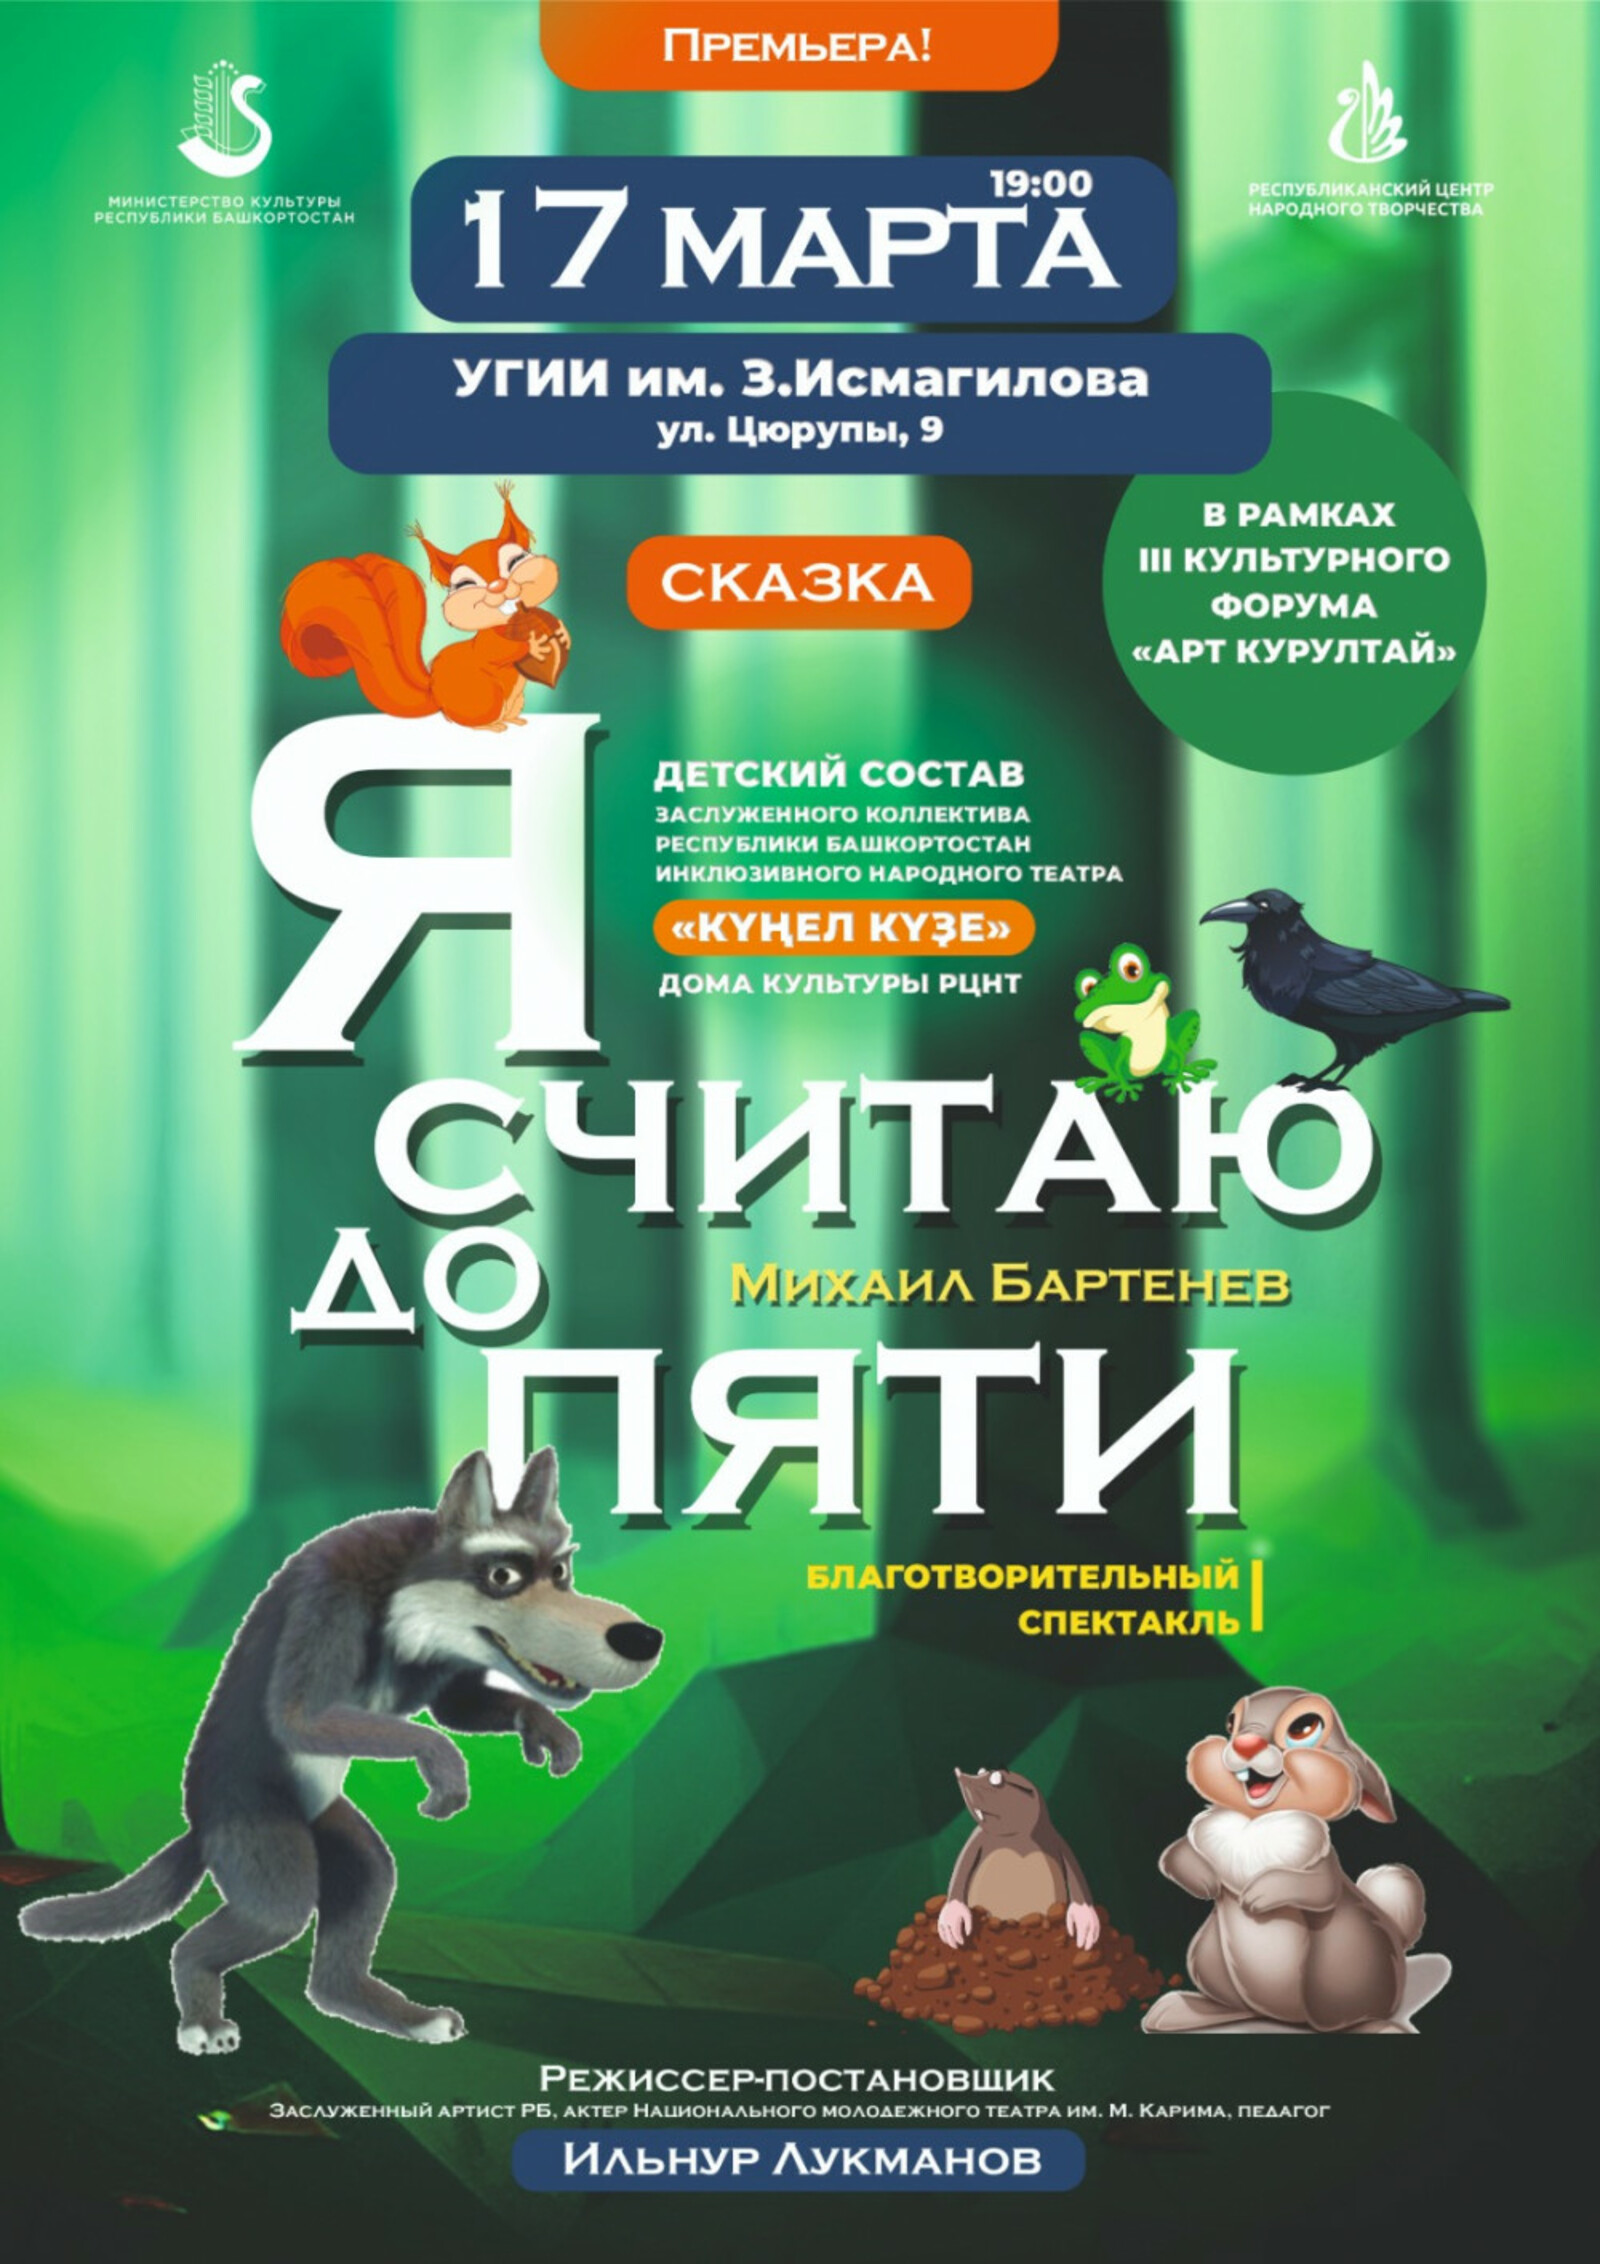 В рамках форума "АРТ-Курултай" состоится премьера спектакля инклюзивного театра